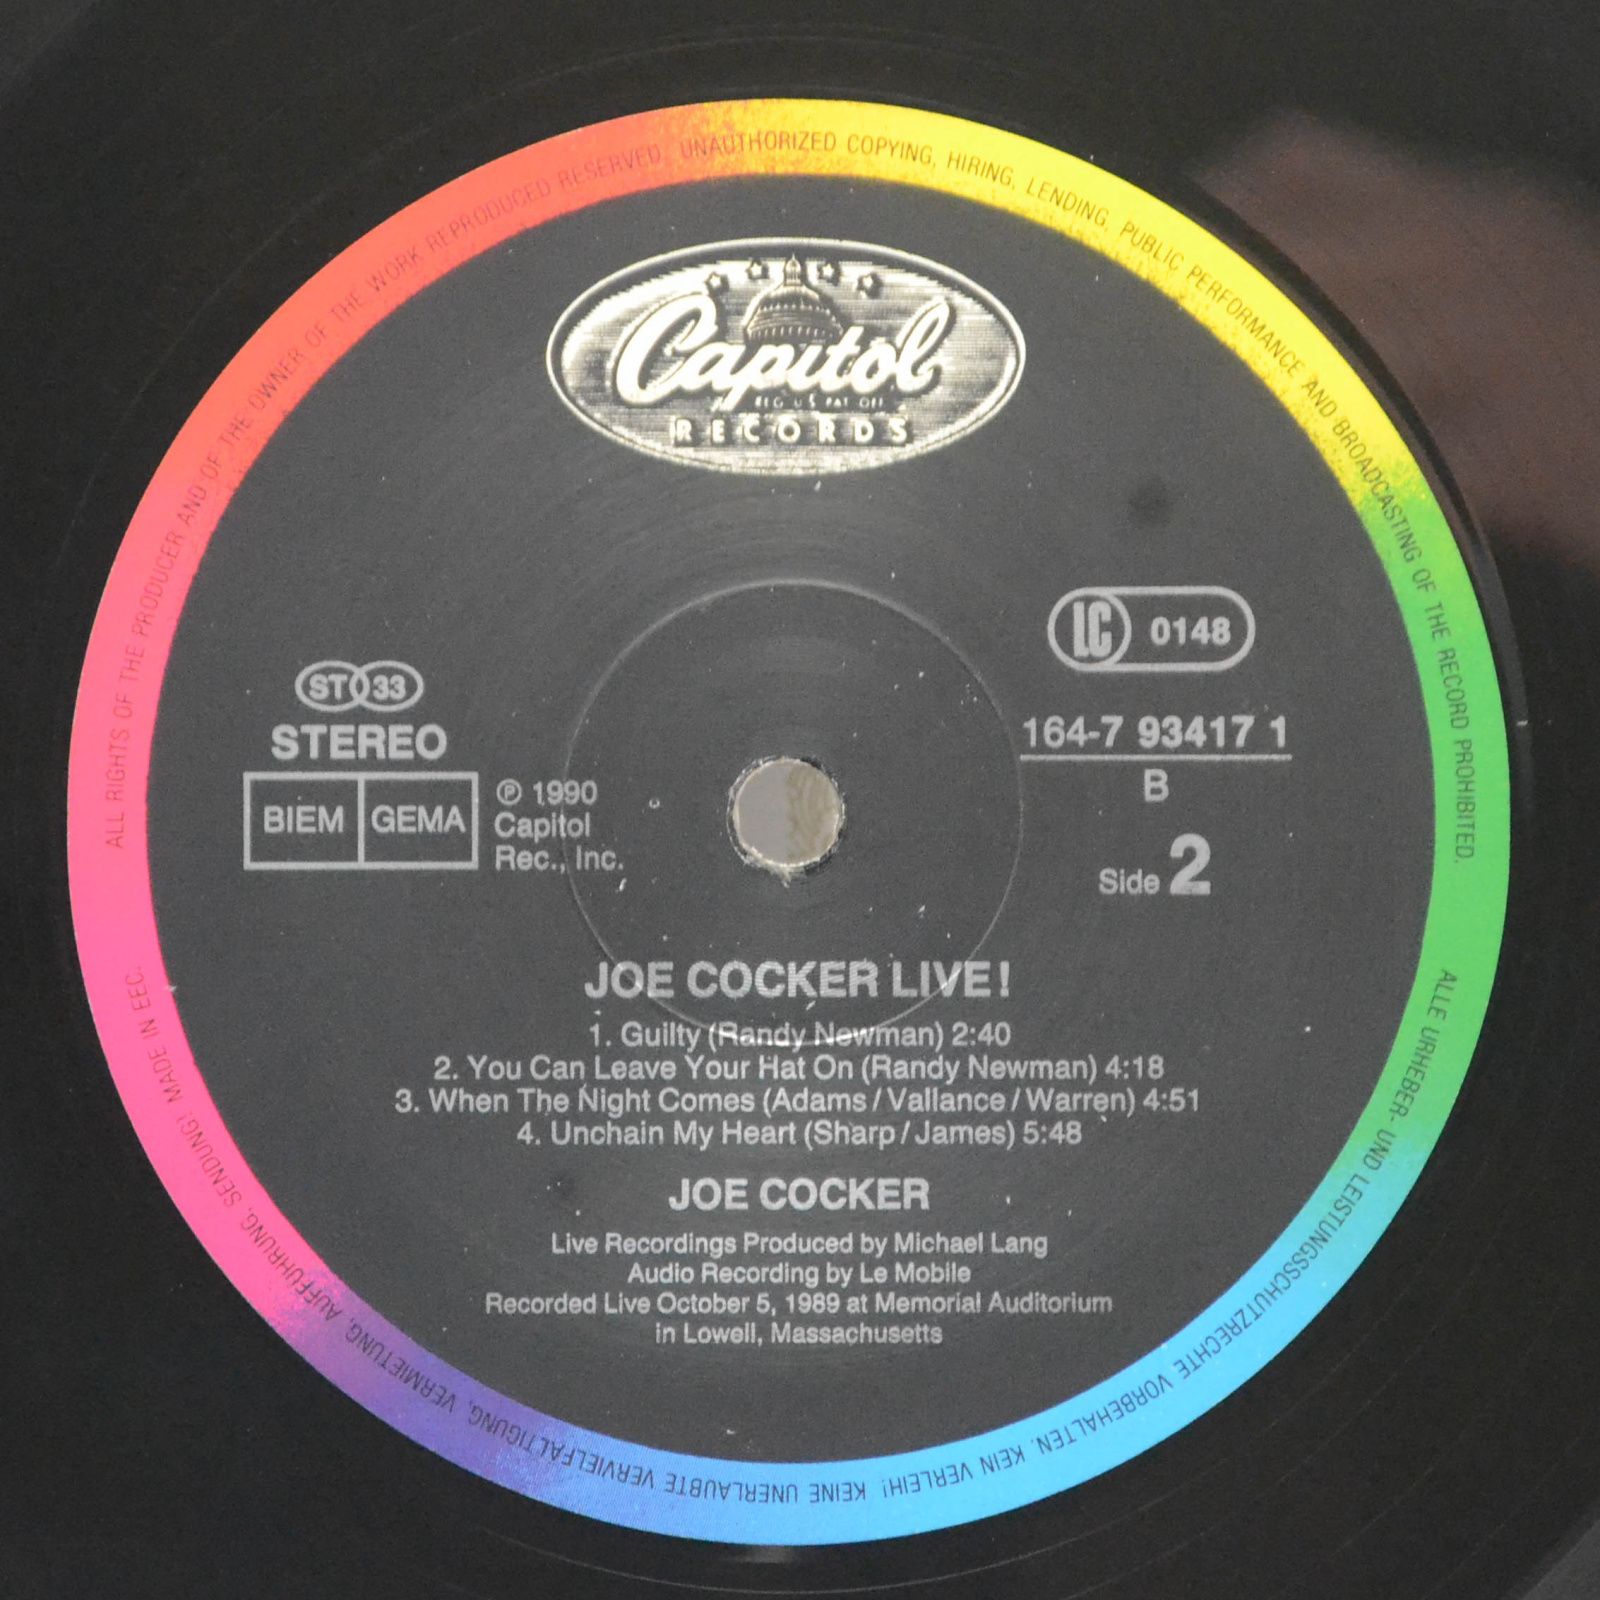 Joe Cocker — Joe Cocker Live (2LP), 1990